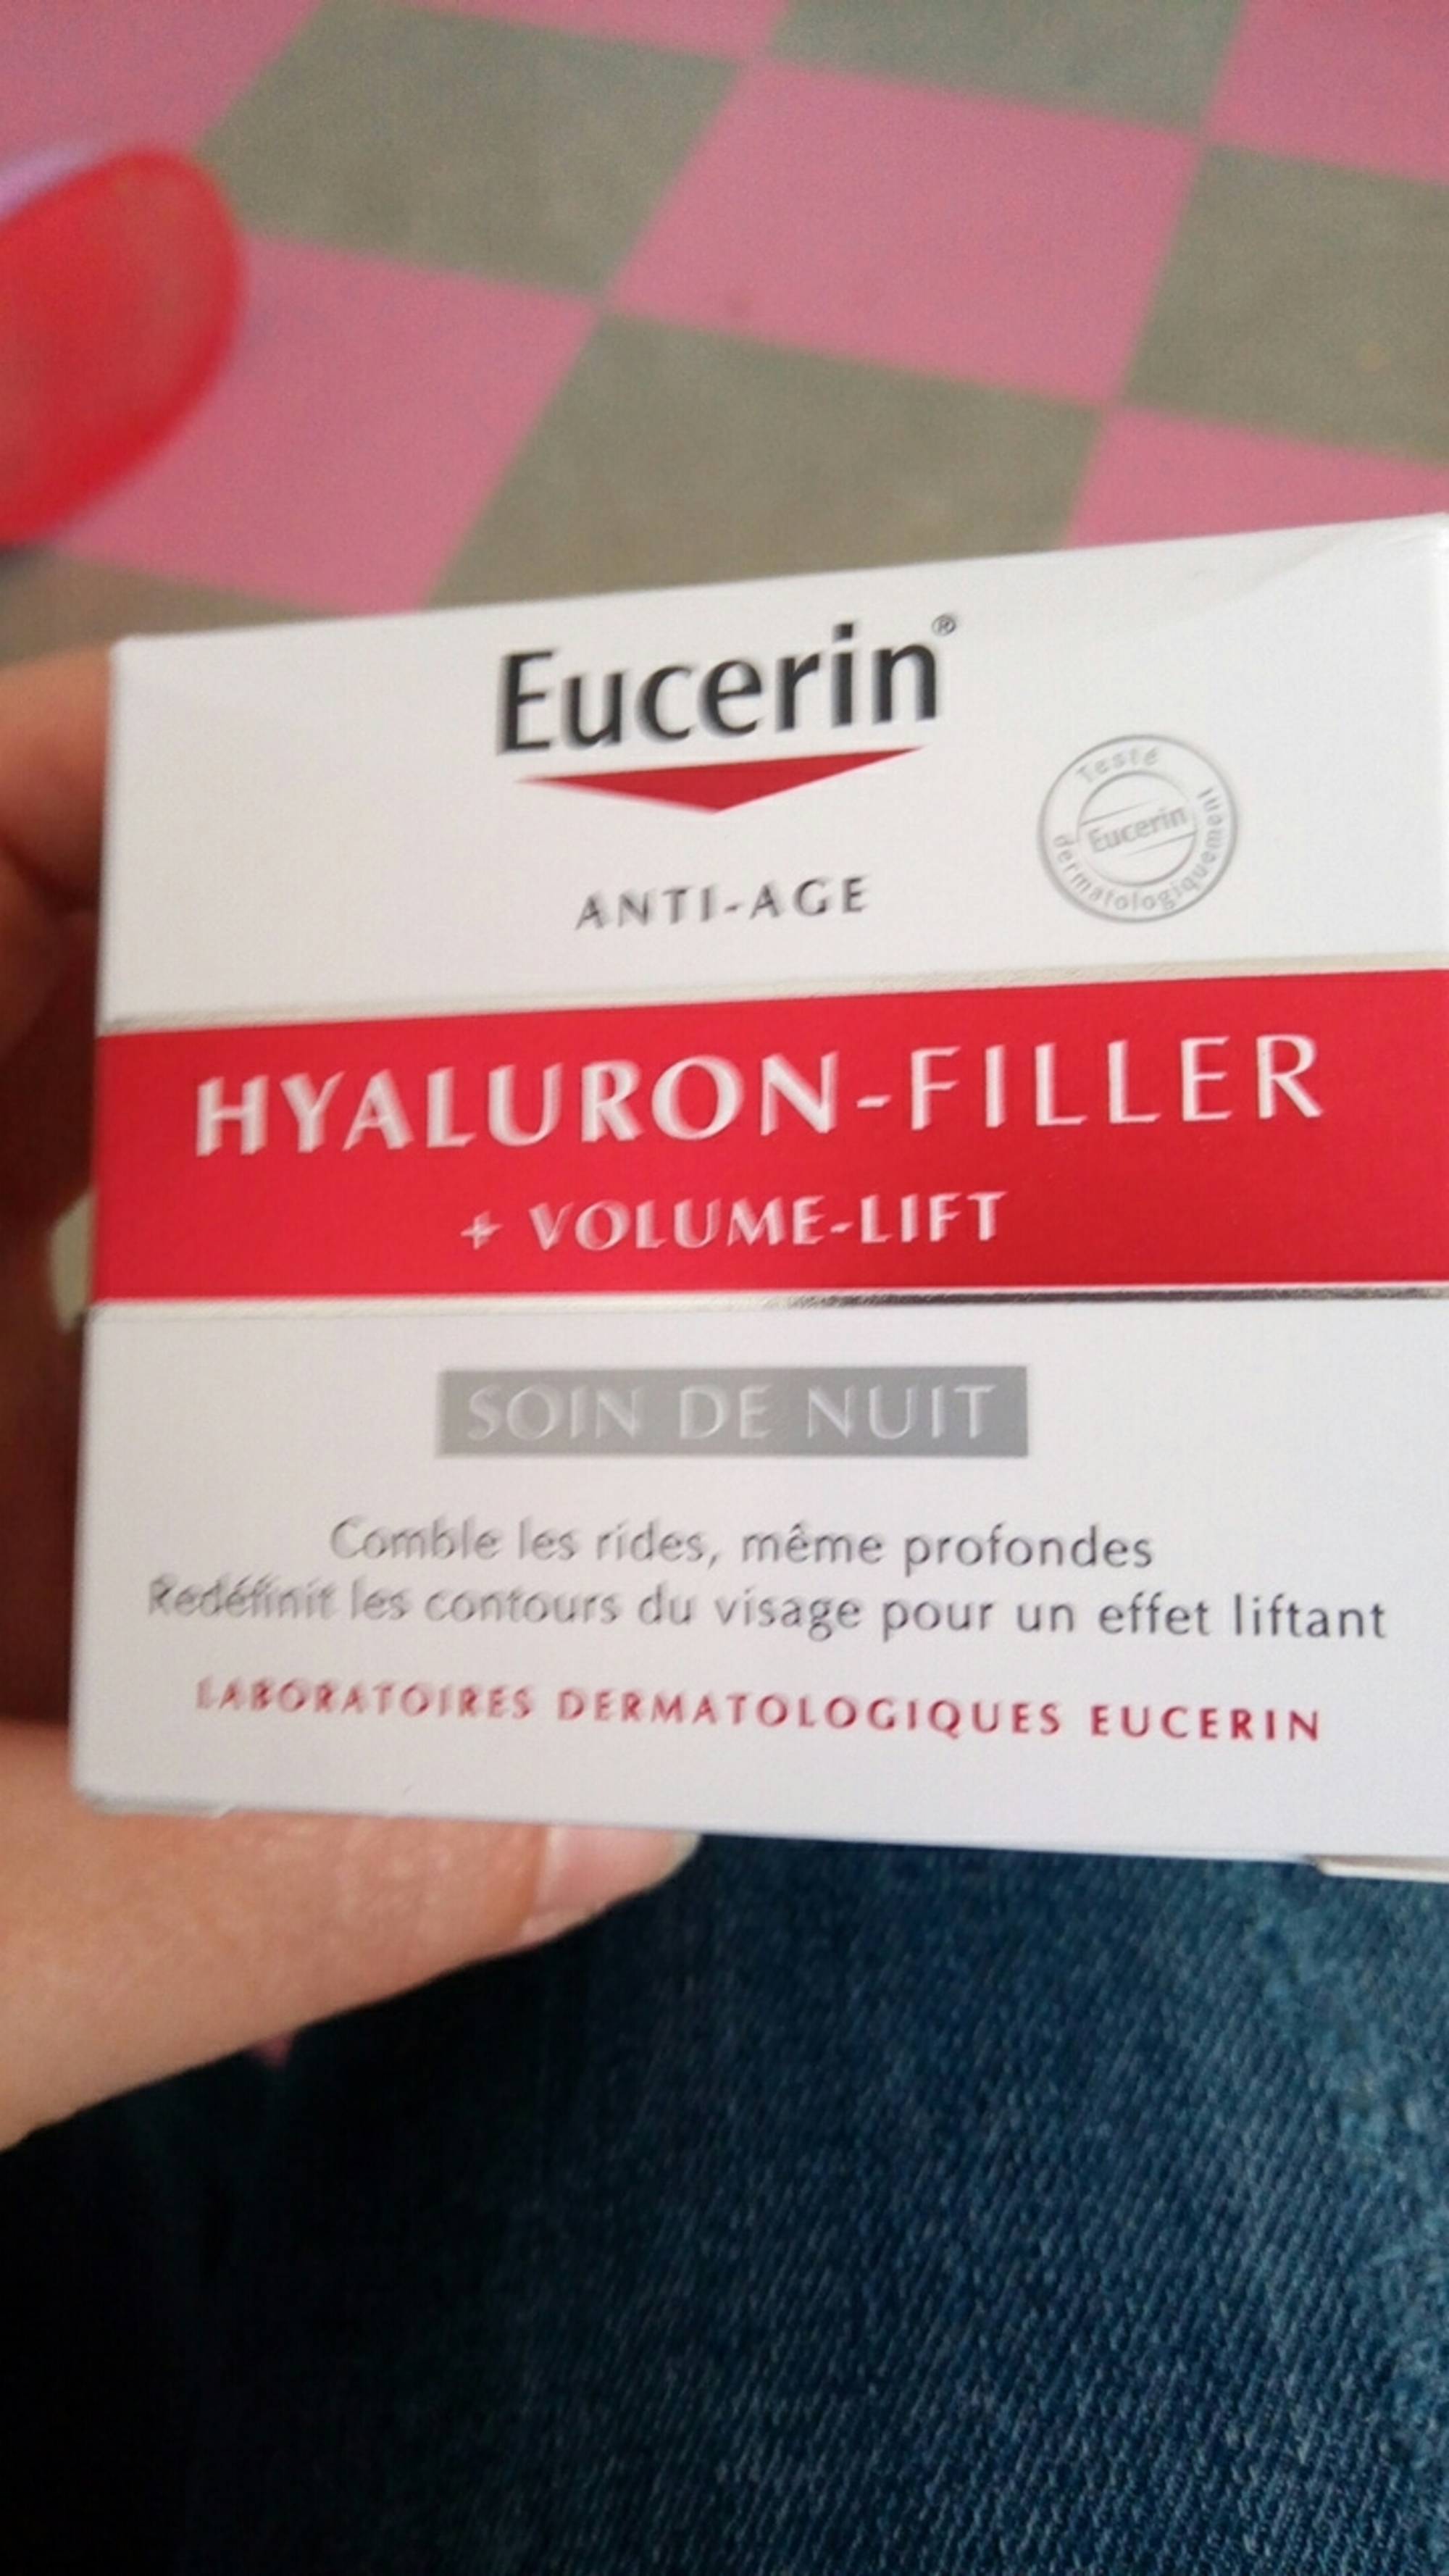 EUCERIN - Hyaluron-filler + volume-lift - Soin de nuit anti-âge